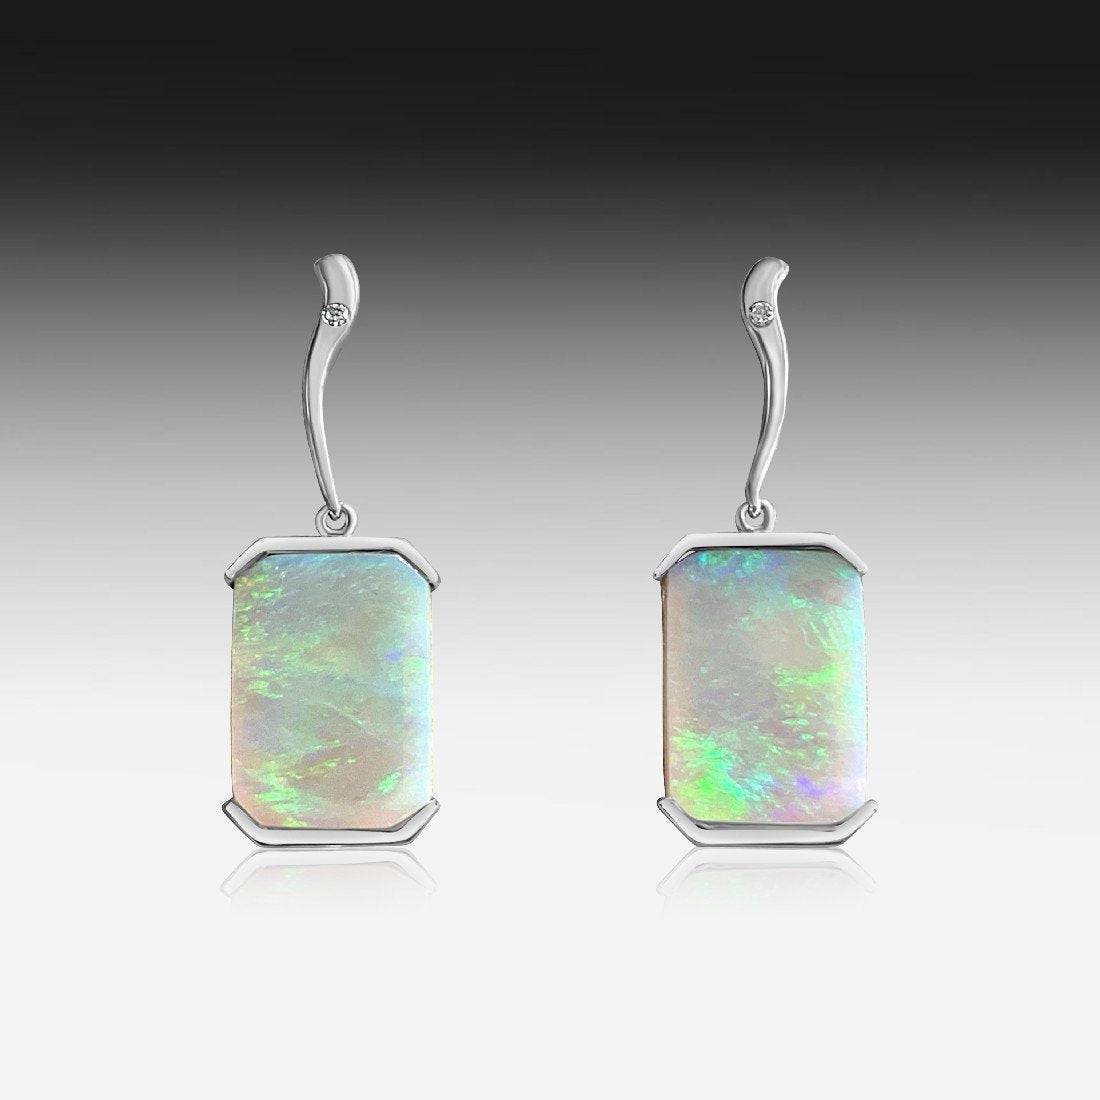 14KT White Gold Opal earrings - Masterpiece Jewellery Opal & Gems Sydney Australia | Online Shop